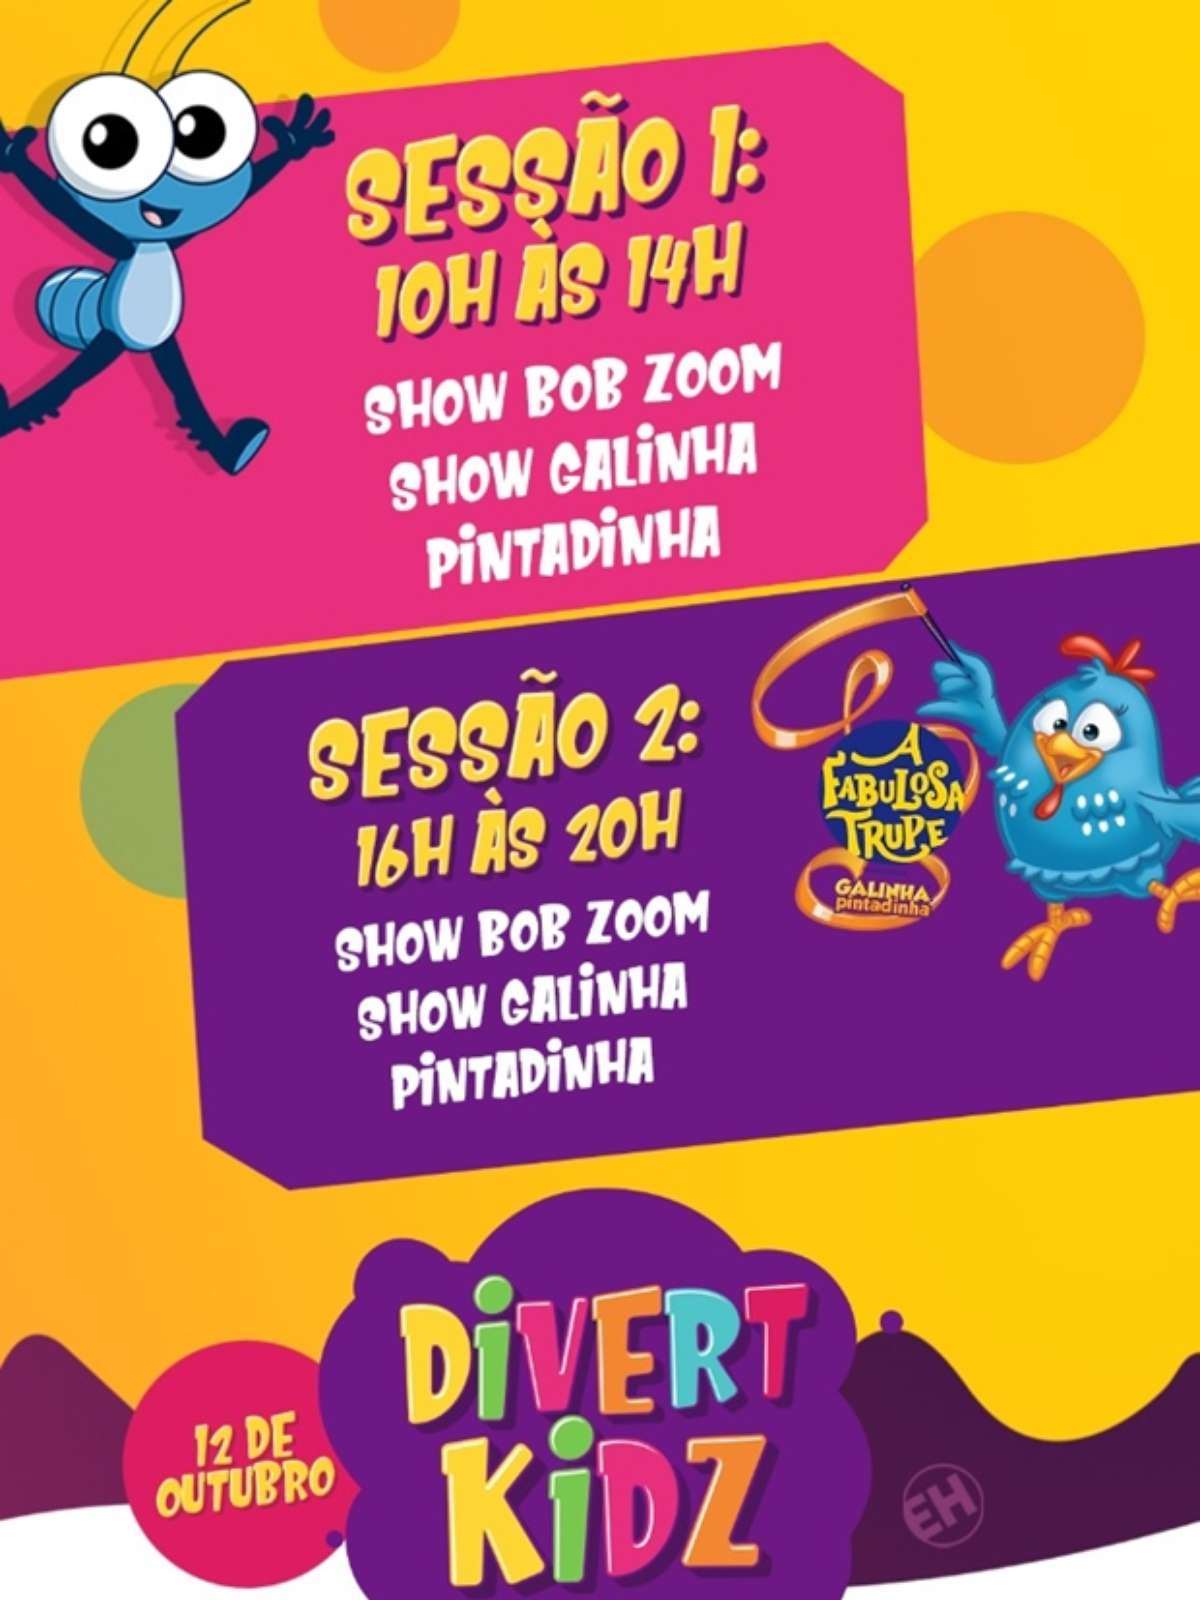 Divertkidz de 2019 apresenta atrações musicais e atividades infantis